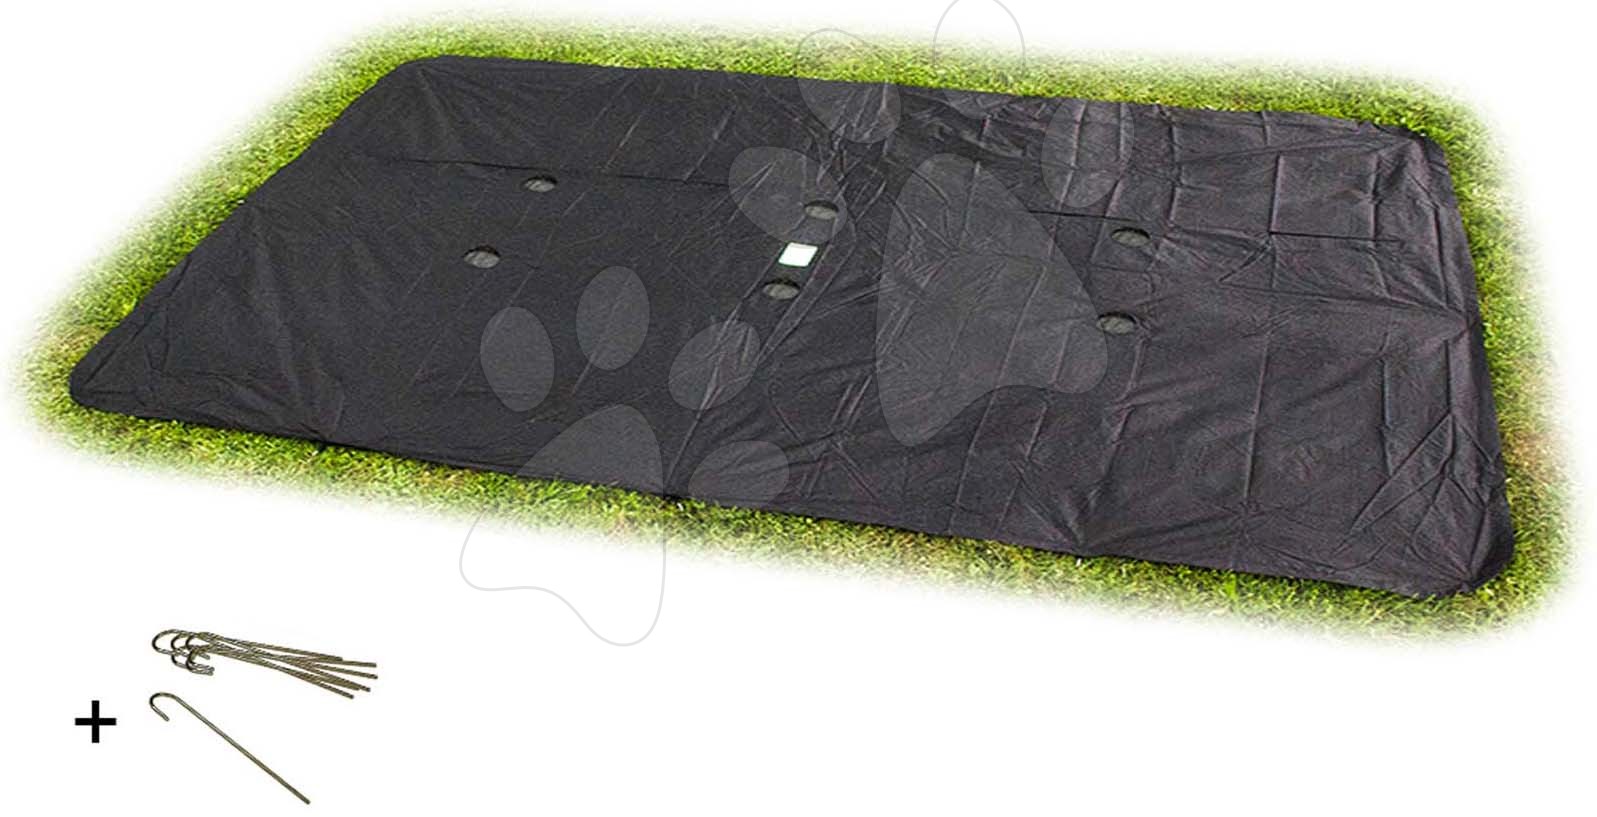 Krycí plachta Weather Cover ground level trampoline rectangular Exit Toys pro trampolíny o rozměru 244*427 cm